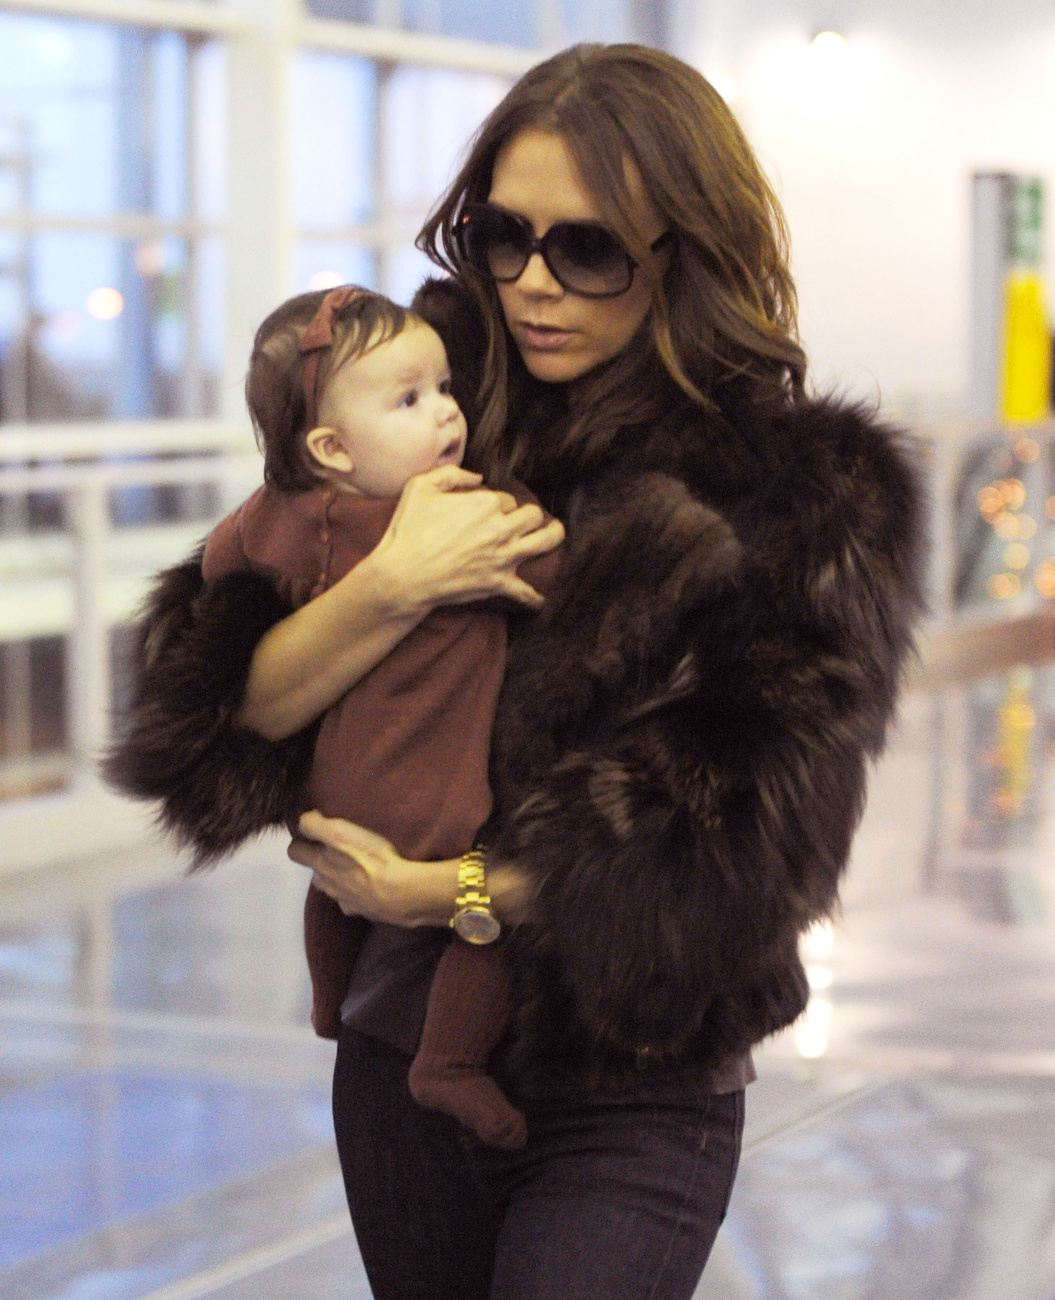 November végén anya és lánya szépen passzoló bíbor és fekete árnyalatú outfitben, lazán zsebre dugott kézzel a Los Angeles-i repülőtéren.